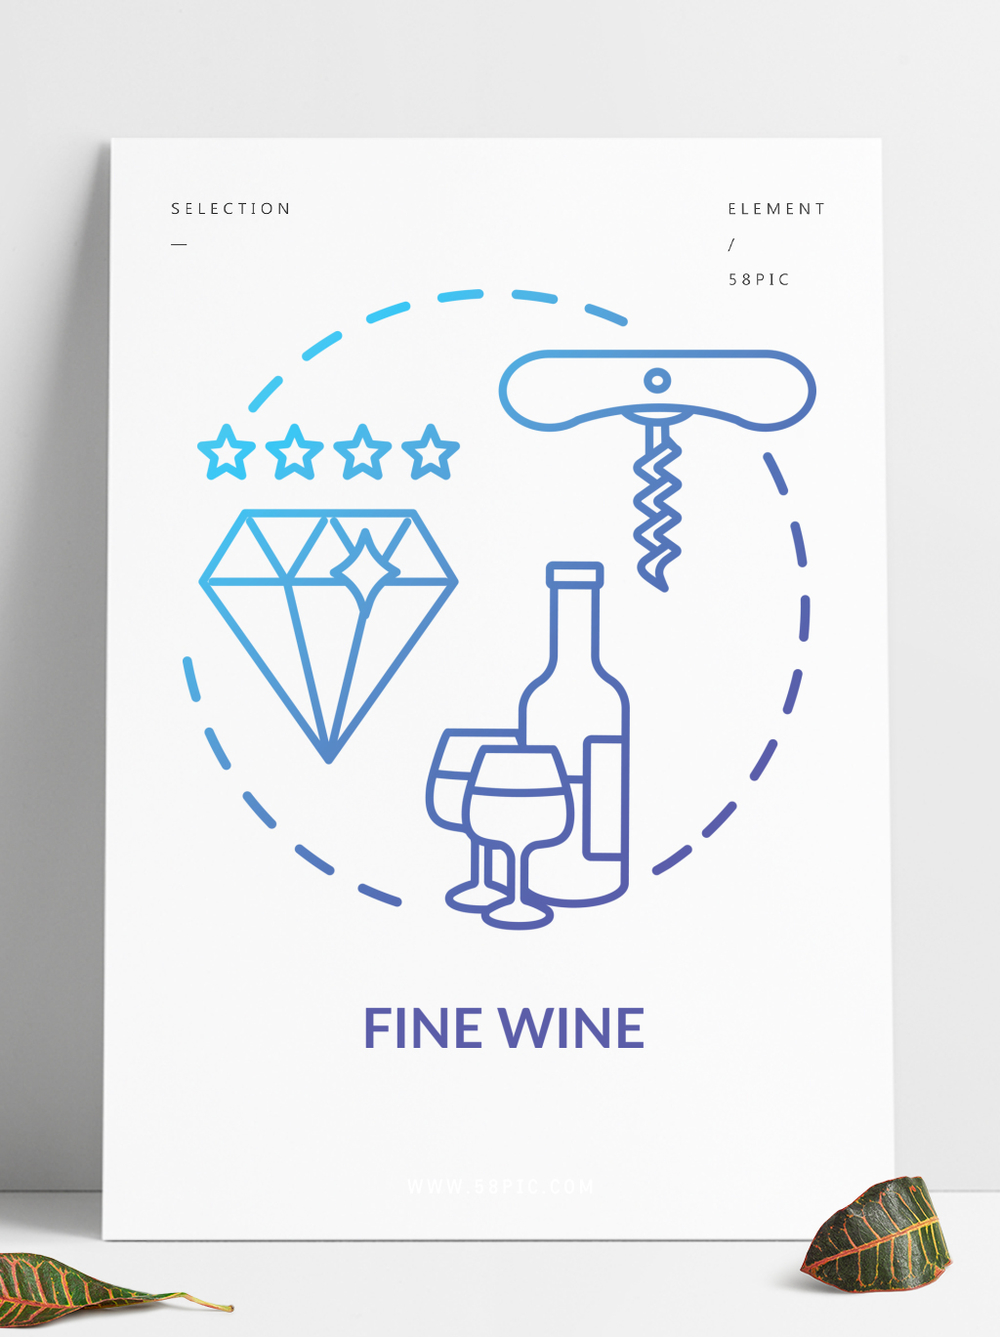 精品酒概念图标葡萄酒酒精饮料优质葡萄酒酿造想法稀薄的线例证饮料老化豪华产品矢量孤立的轮廓RGB颜色绘图